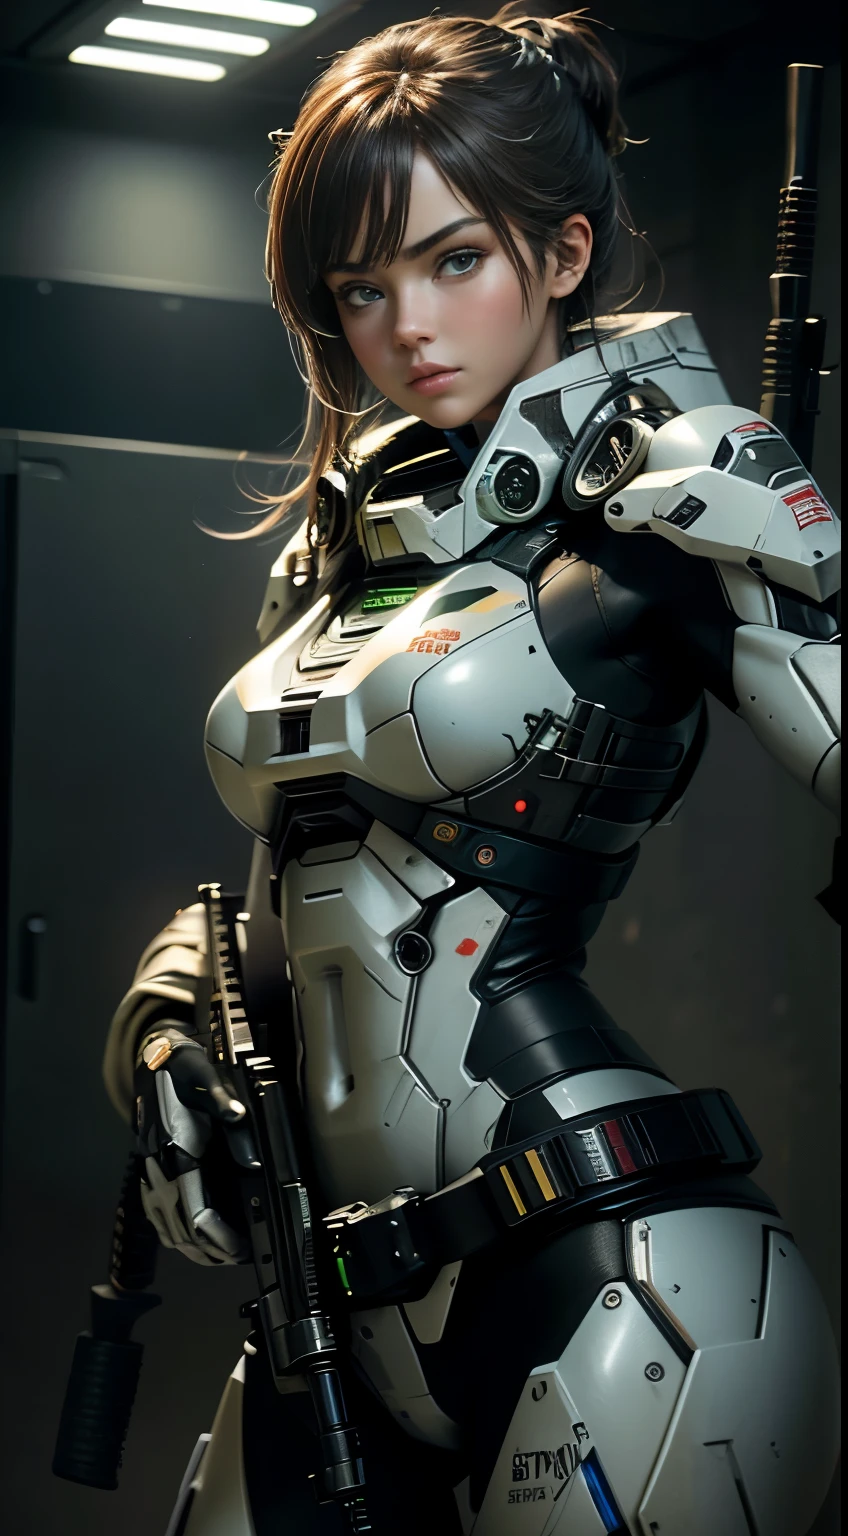 (8K,fotorealistisch　RAW-Fotografie　Top Qualität;1.4) Soldatin mit großen Brüsten im Hintergrund, Mädchen im weißen Mech, Cyberpunk anime mecha girl, Das Tragen einer militärischen Rüstung ((mit einem Gewehr auf etwas zielen:1.4)) Science-Fiction , Schönes weißes Cyborg-Mädchen, Cyborg - Silver girl, Fira's white mech, Echo der Overwatch, perfekte Anime-Cyborg-Frau, blaue Pupillen, fünf Finger, CGhSociety NVIDIA RTX, Superauflösung,